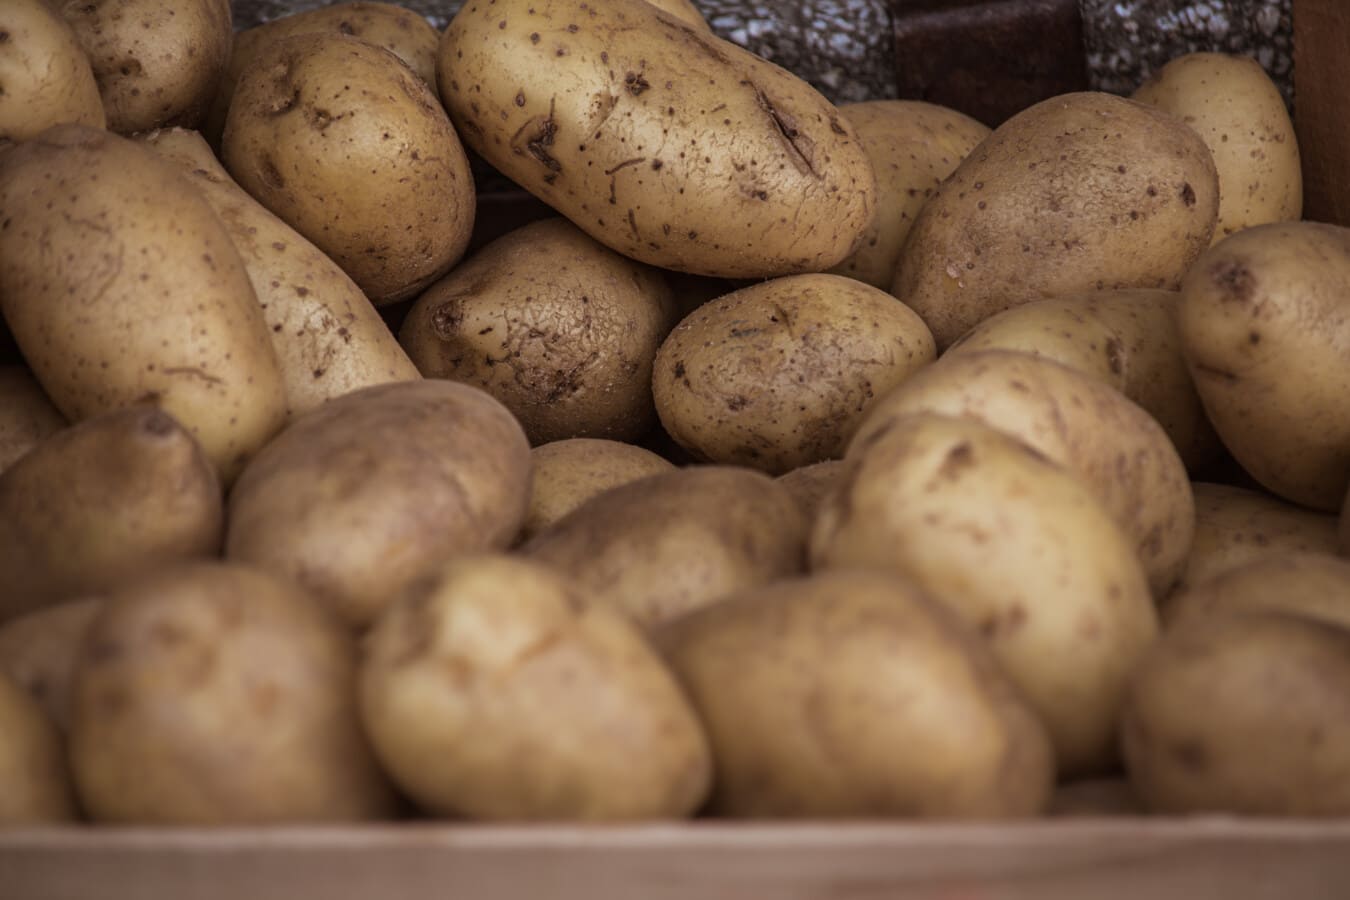 What are Irish Potatoes?